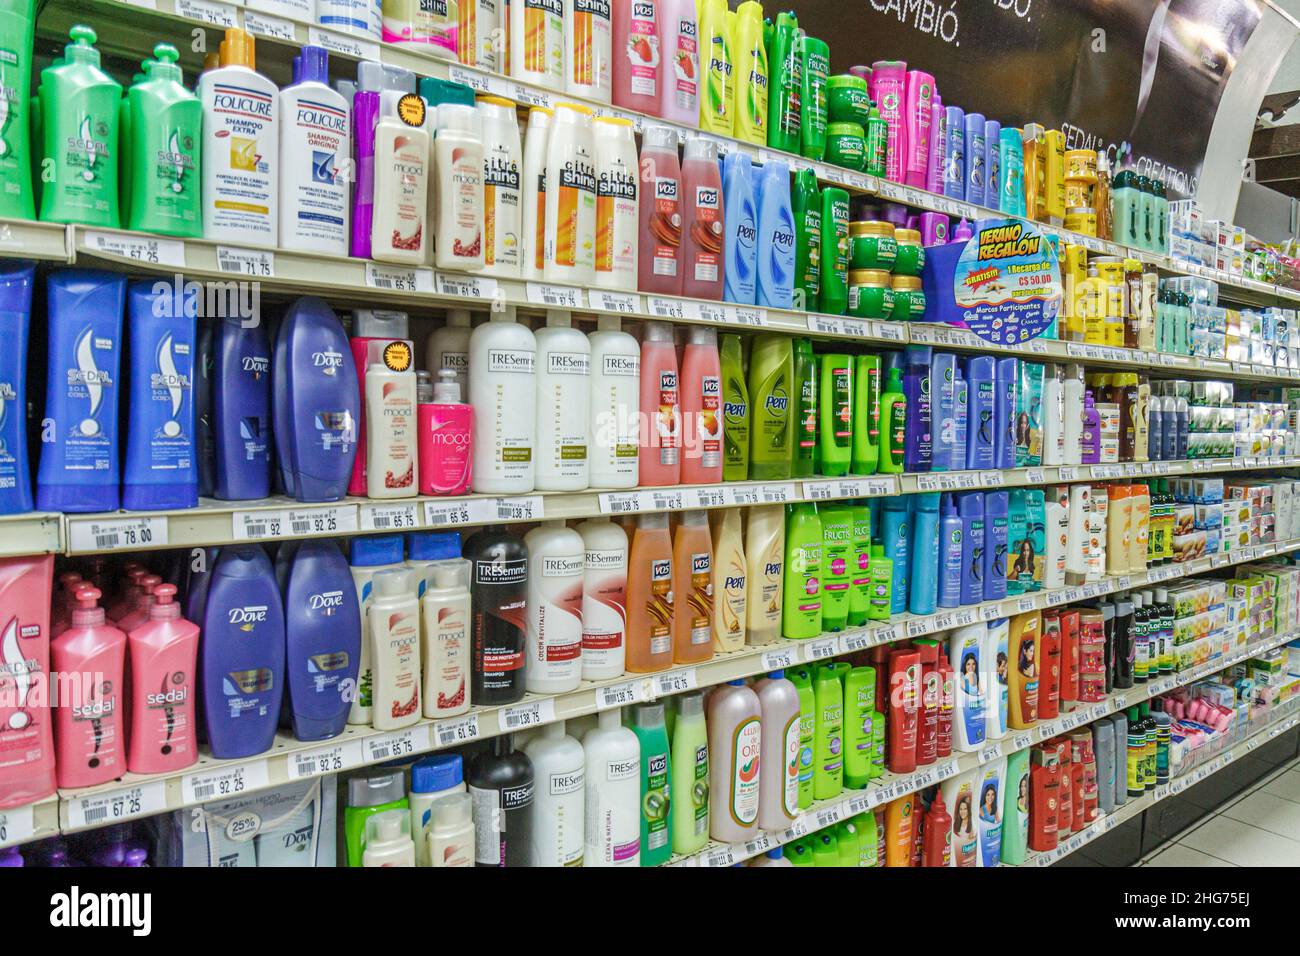 https://c8.alamy.com/comp/2HG75EJ/nicaragua-managua-supermarket-storeshopping-retail-business-shelf-shelves-personal-care-toiletries-shampoos-hair-care-pert-dove-vo5-fructis-citre-2HG75EJ.jpg